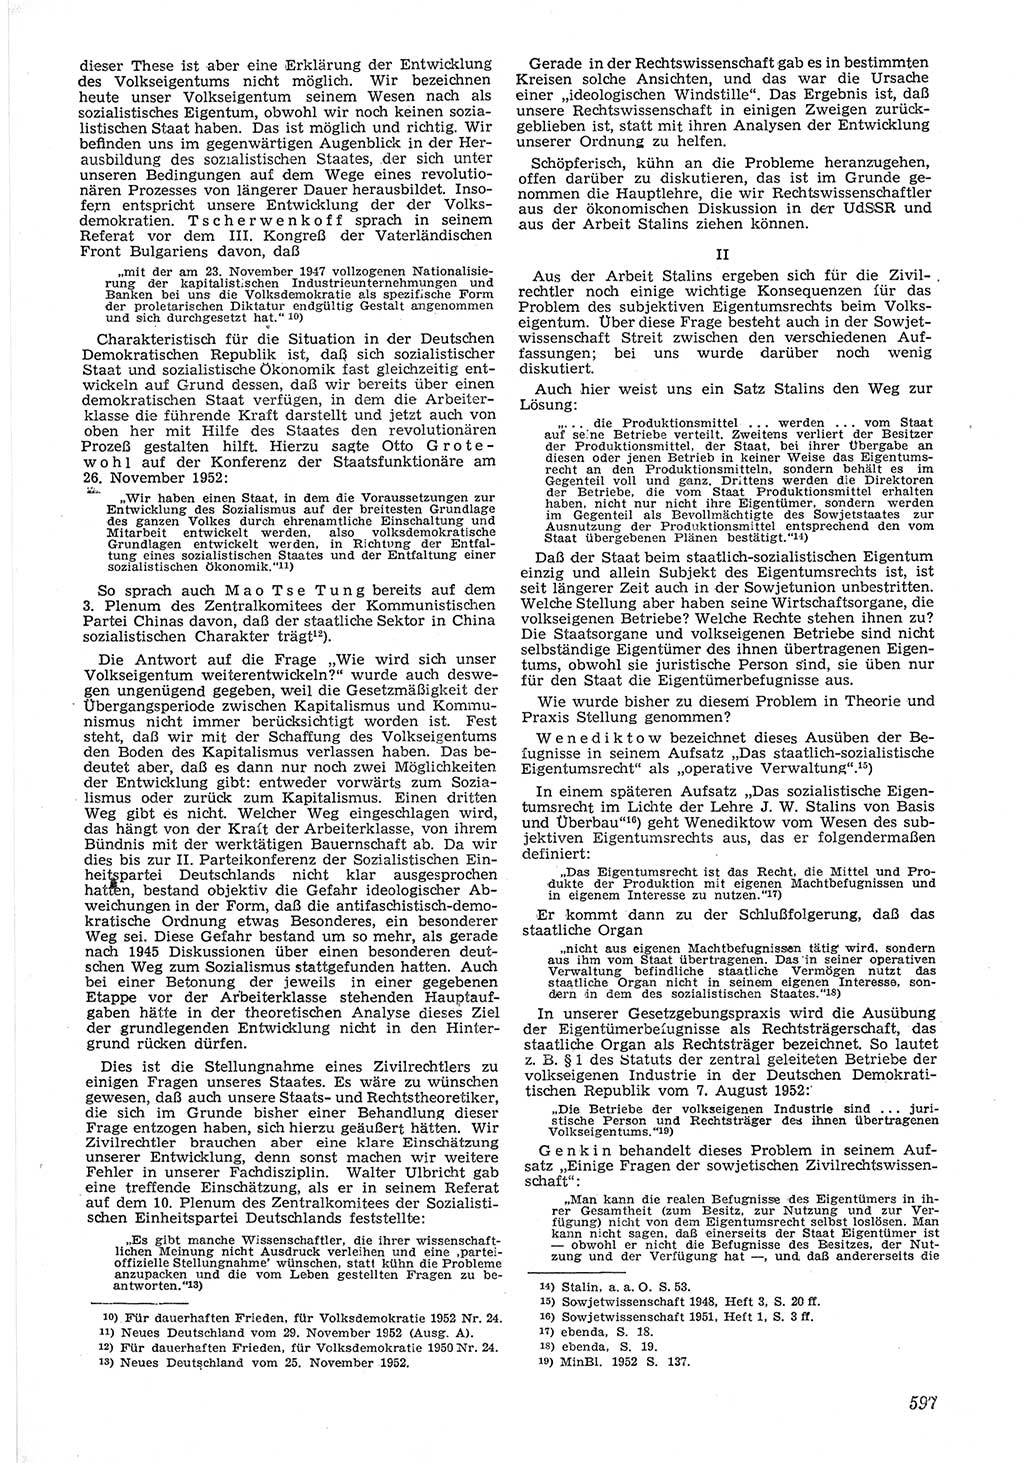 Neue Justiz (NJ), Zeitschrift für Recht und Rechtswissenschaft [Deutsche Demokratische Republik (DDR)], 6. Jahrgang 1952, Seite 597 (NJ DDR 1952, S. 597)